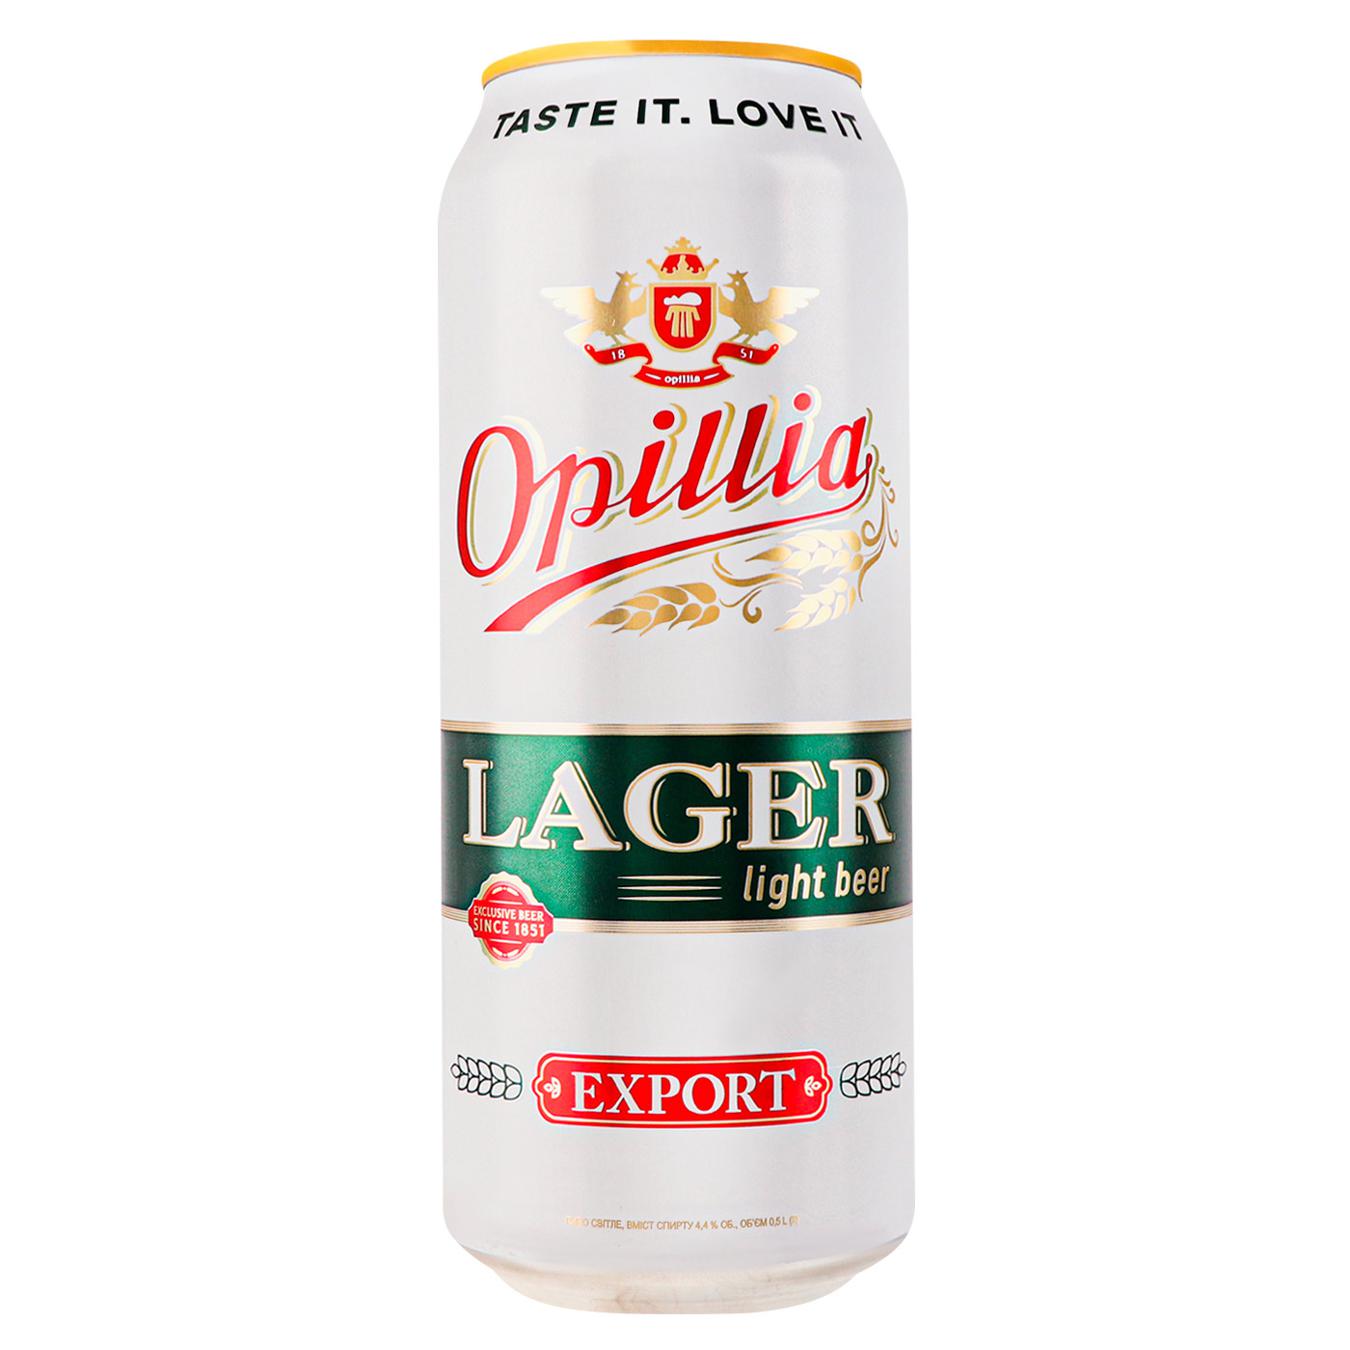 Пиво світле Опілля Lager Export 4,4% 0,5л залізна банка